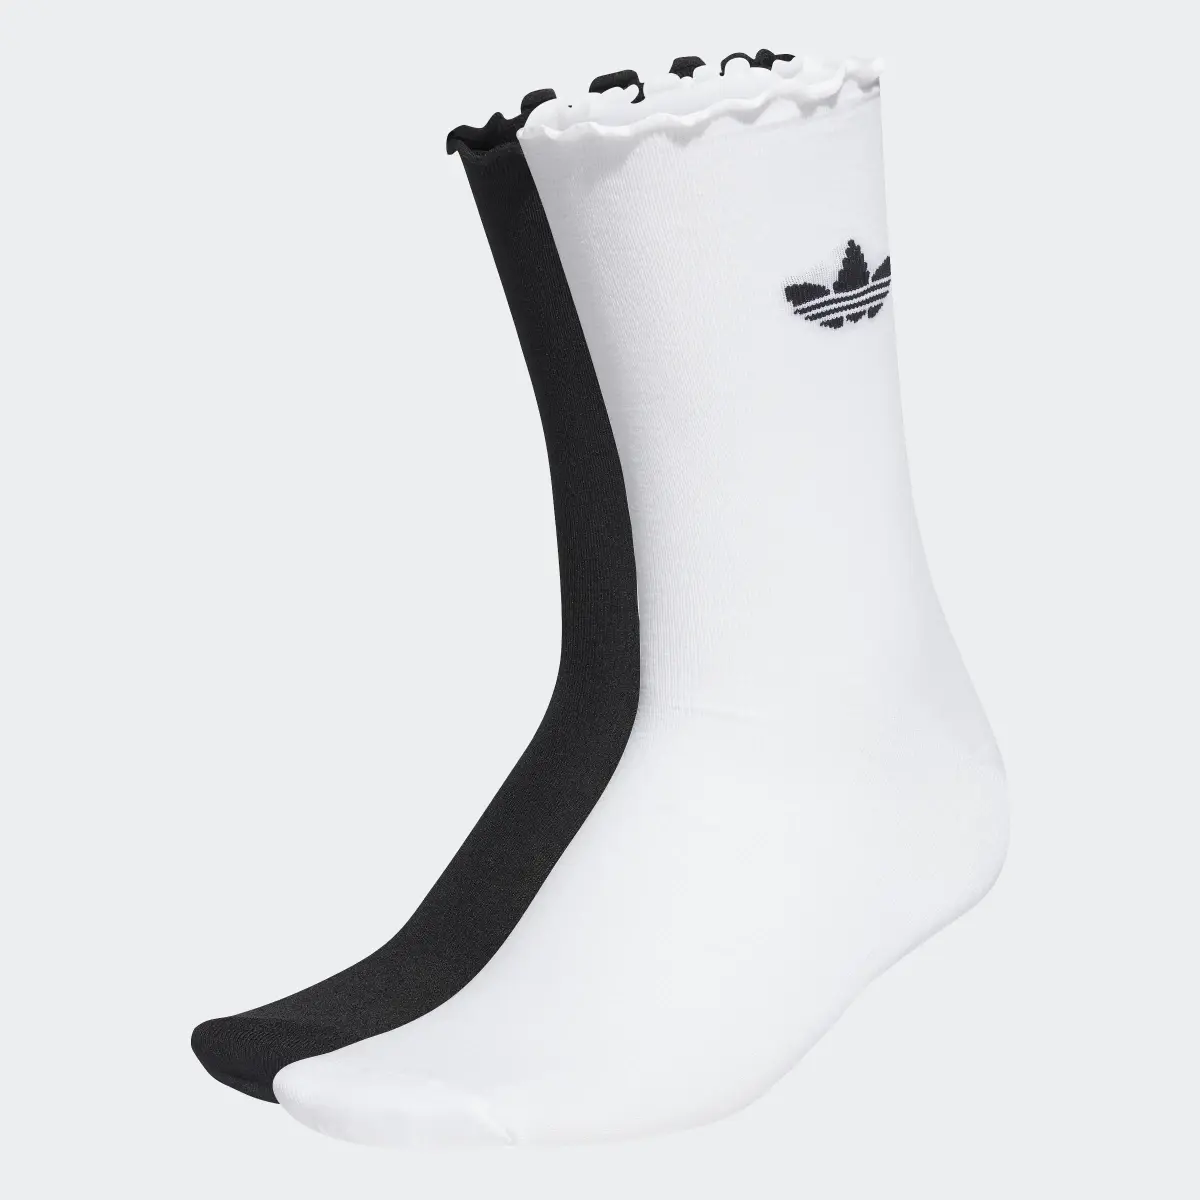 Adidas Semi-Sheer Ruffle Crew Socks 2 Pairs. 2